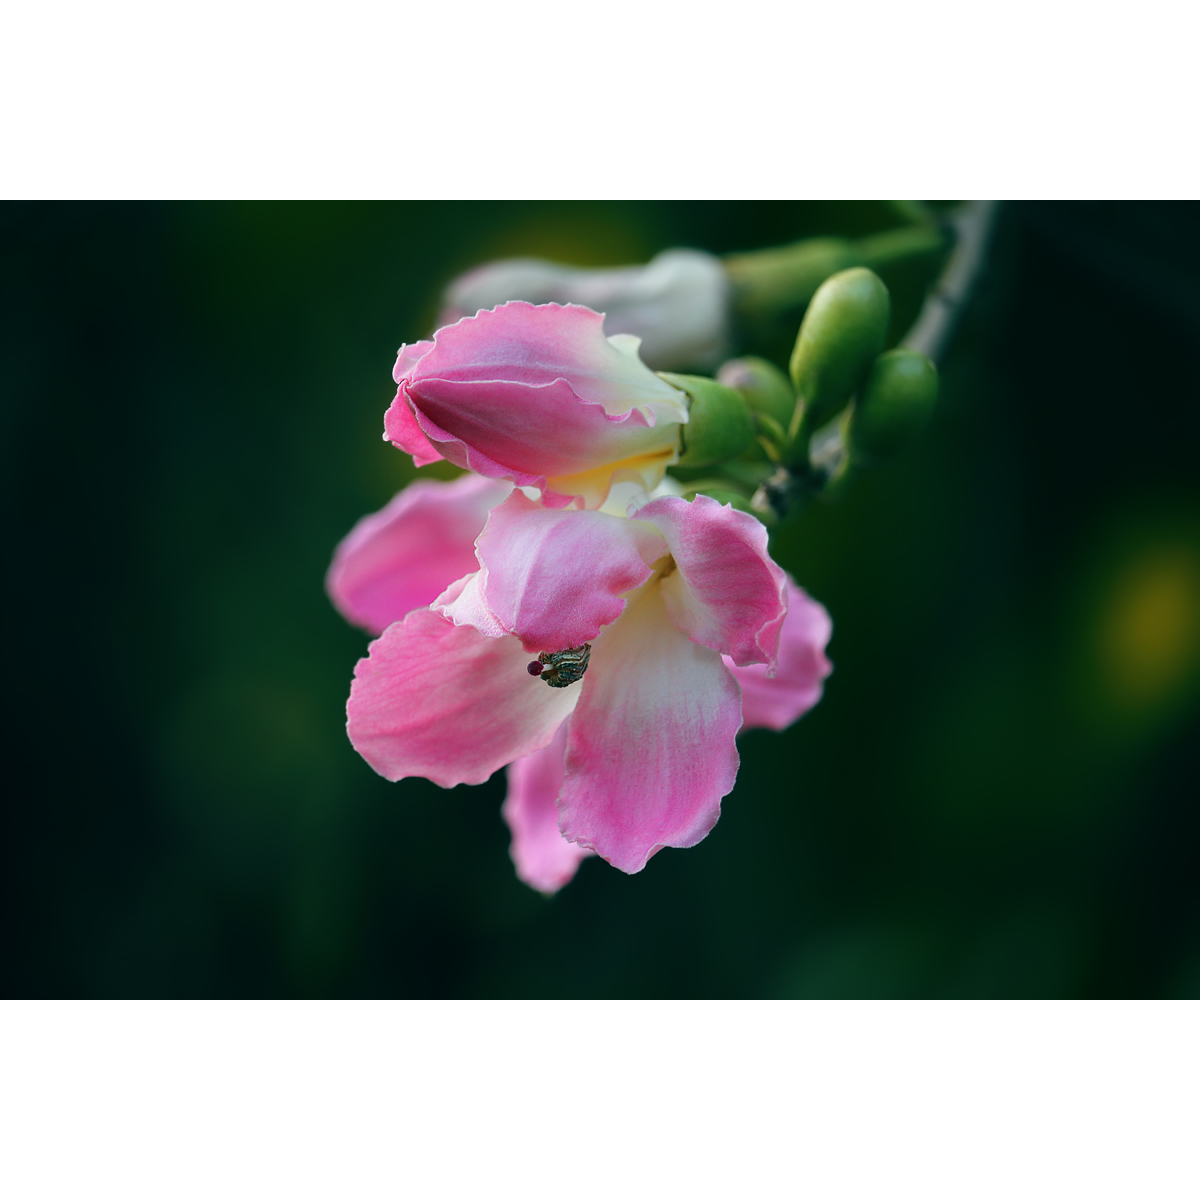 原创花卉摄影作品-美丽异木棉花(1张) 高清PS背景素材电子图片